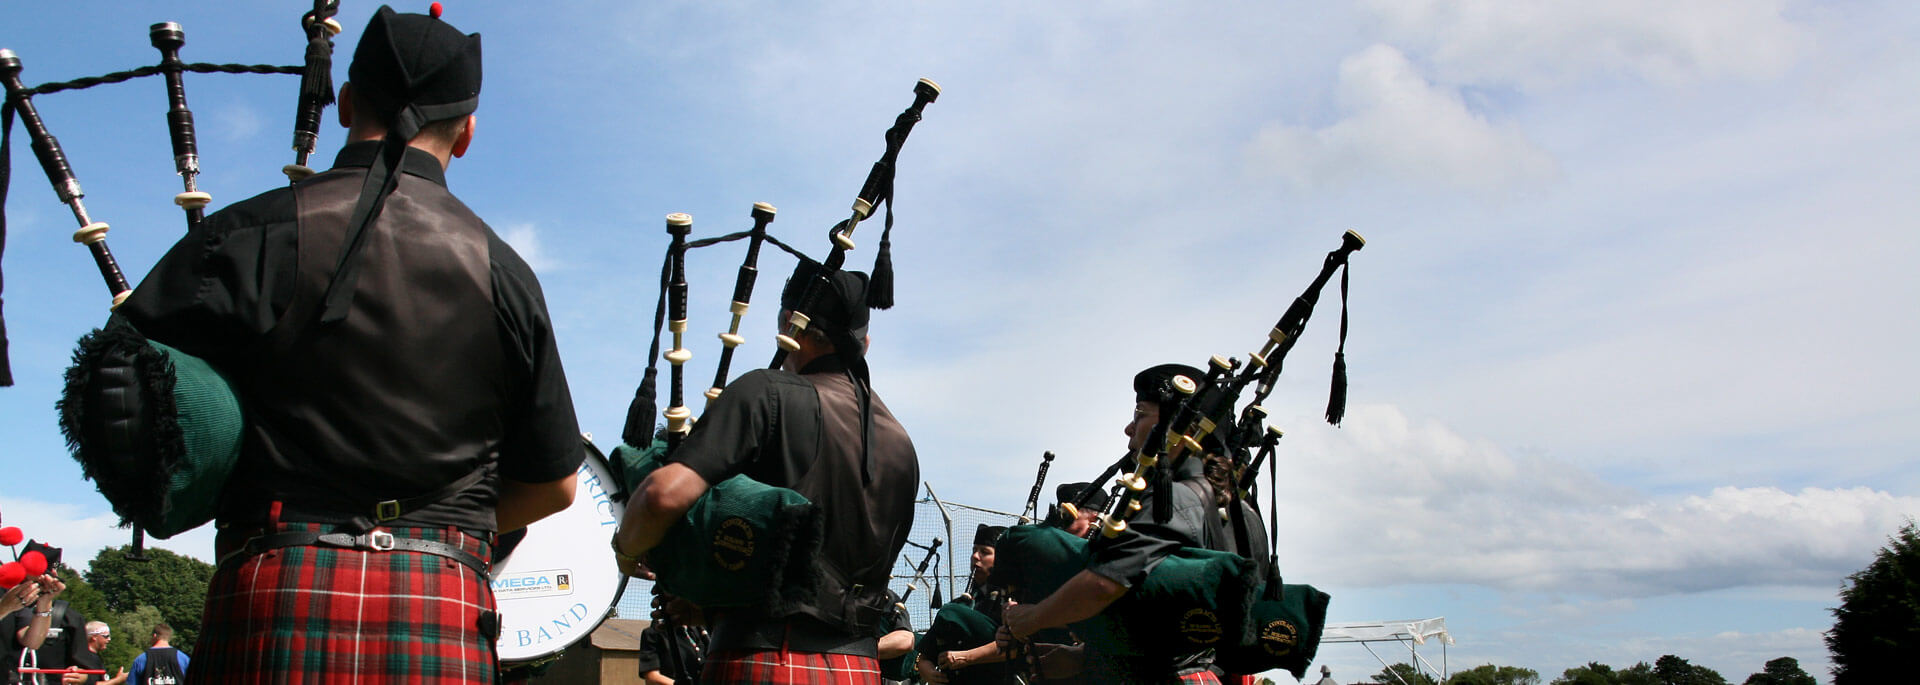 Warum man auf einem Schottland-Trip unbedingt zu den Highland Games gehen sollte